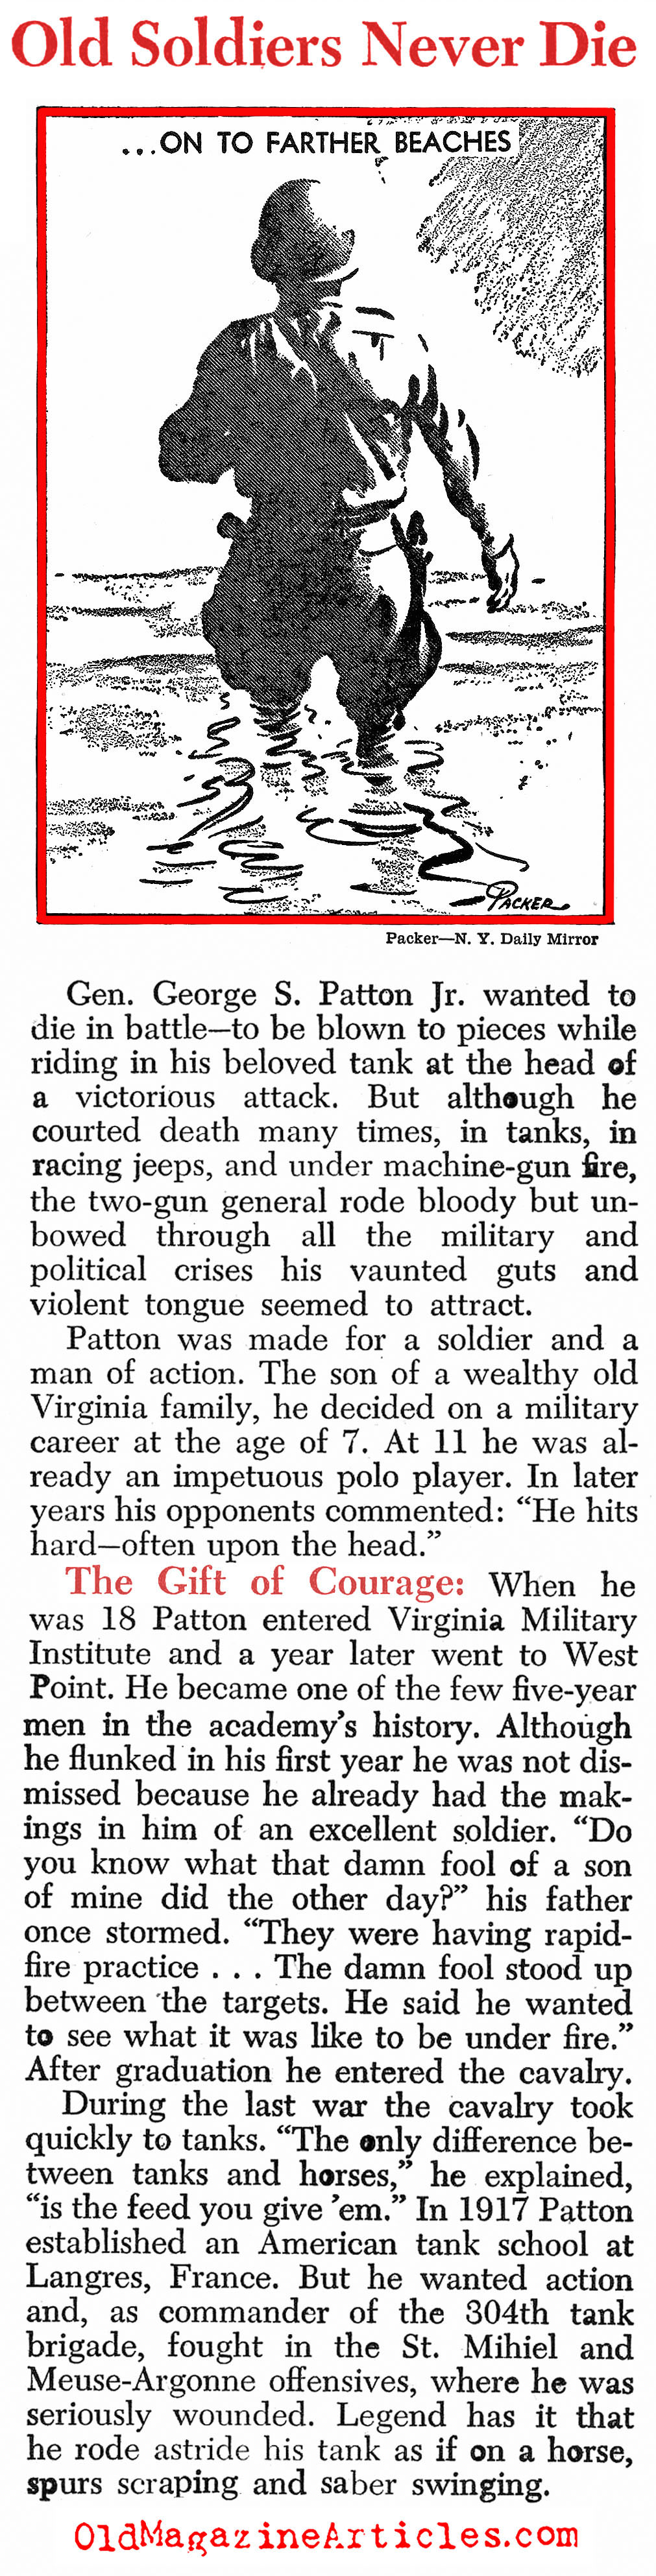 Ol' Blood 'N Guts Goes South (Newsweek Magazine, 1945)